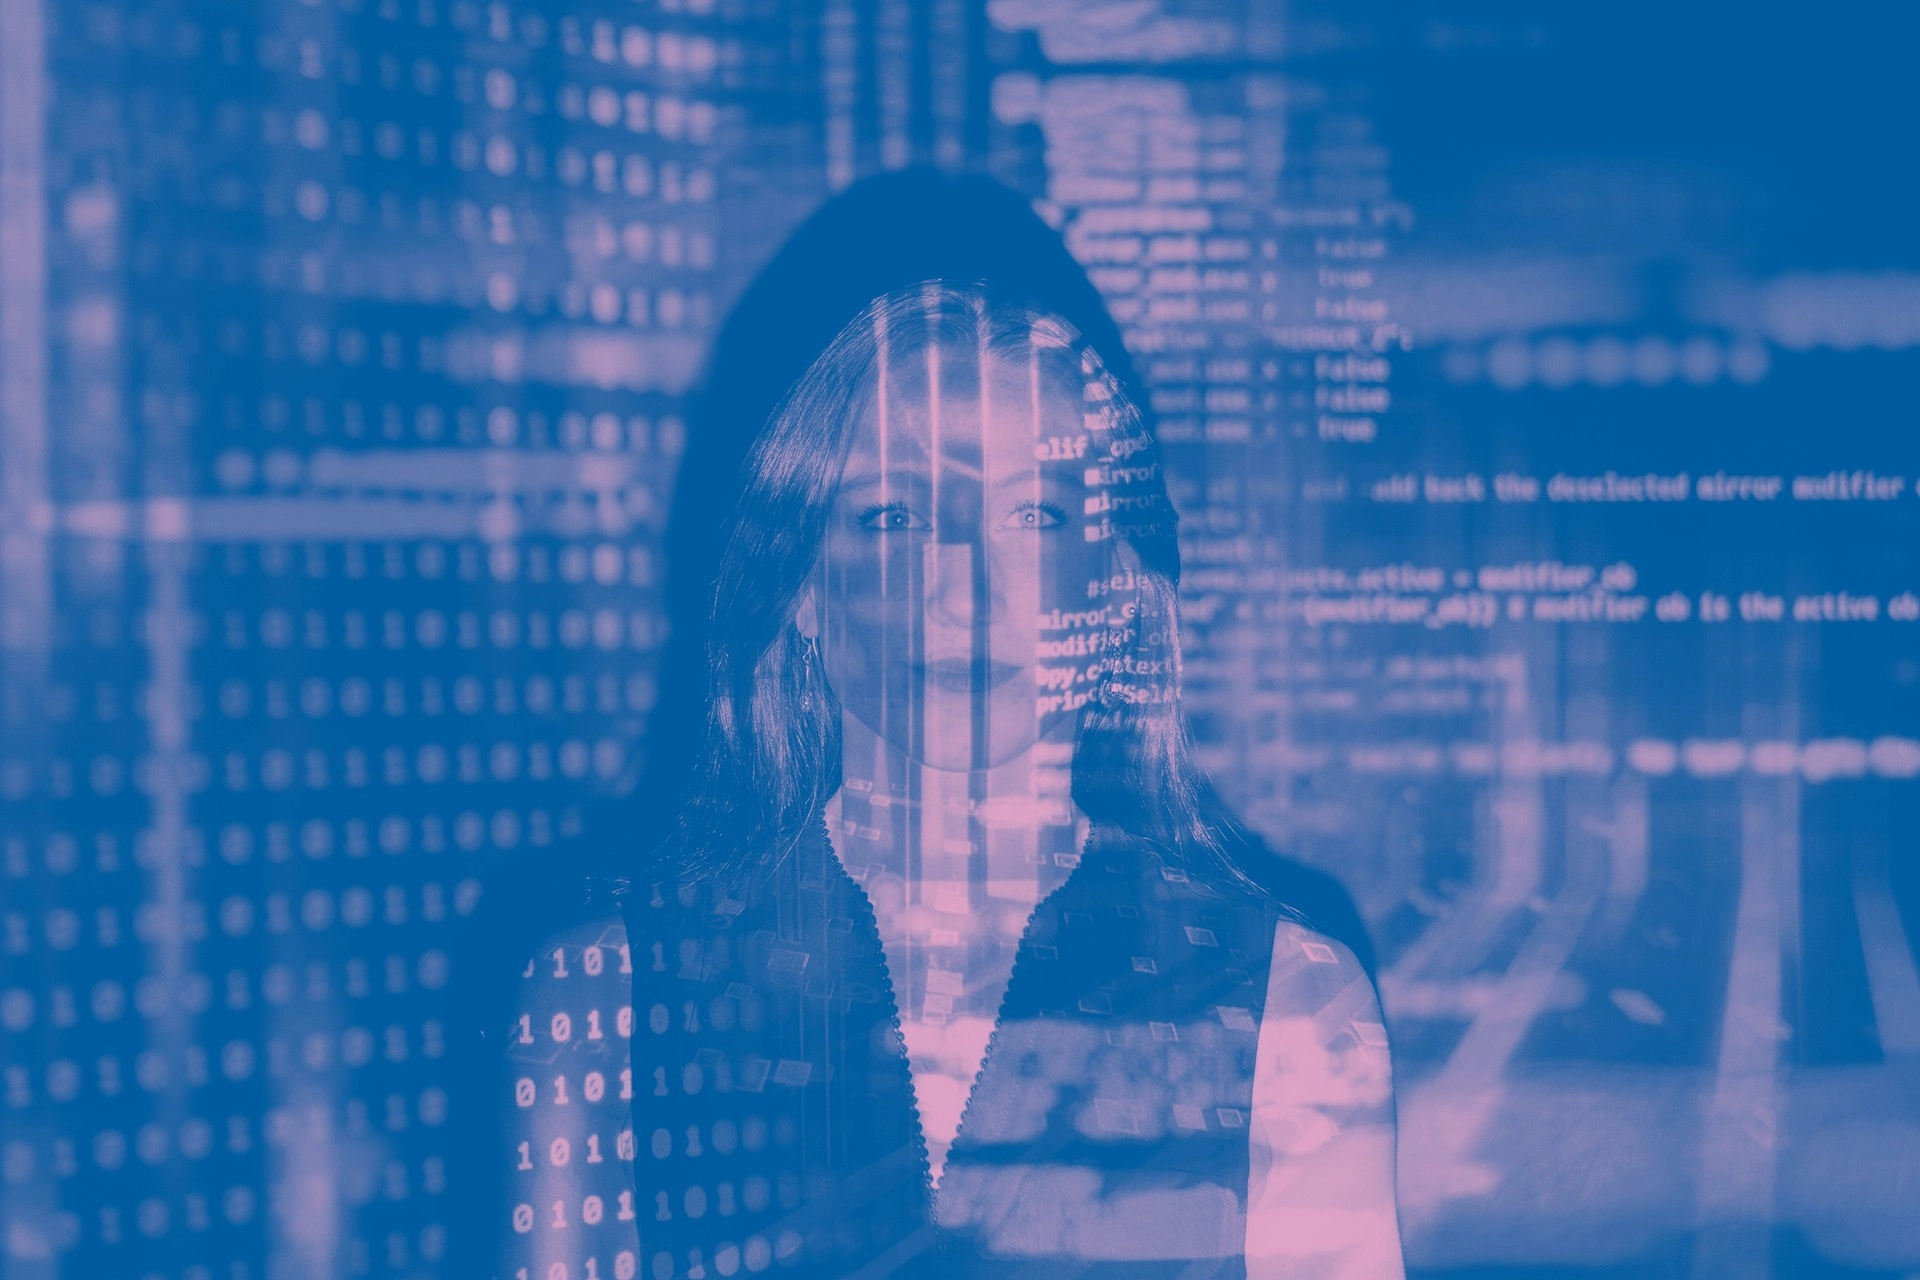 Imatge coloritzada en blau amb l'imatge d'una dona al laboratori Ciutalab 